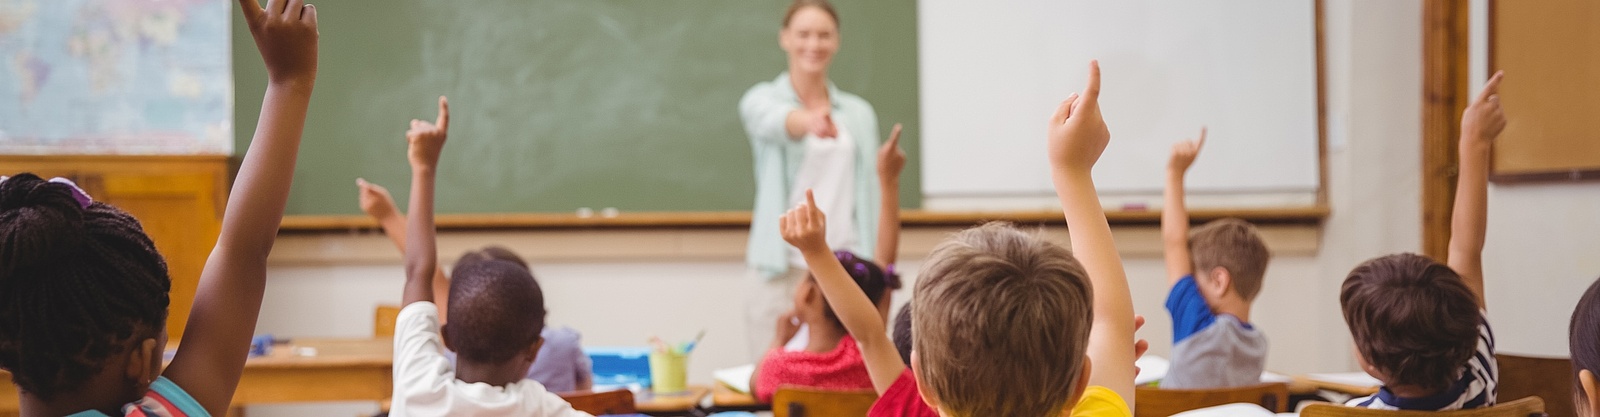 En kvinnlig lärare står leendes framför en grön tavla och pekar mot några barn som räcker upp handen. 